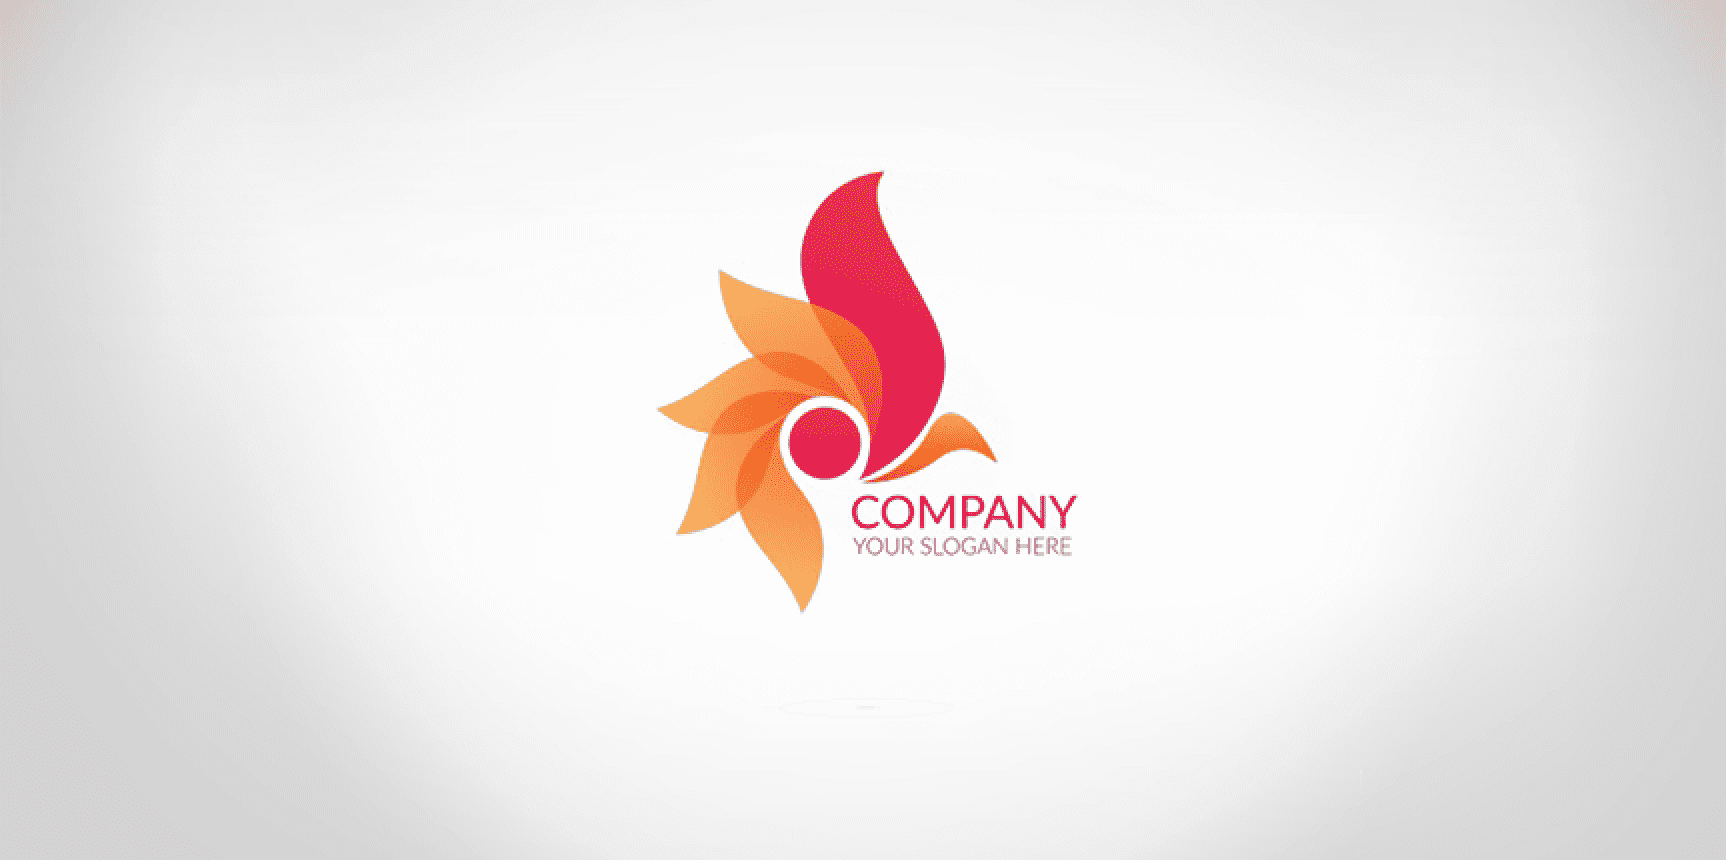 Logo công ty nhìn như sáu cái đuôi cáo